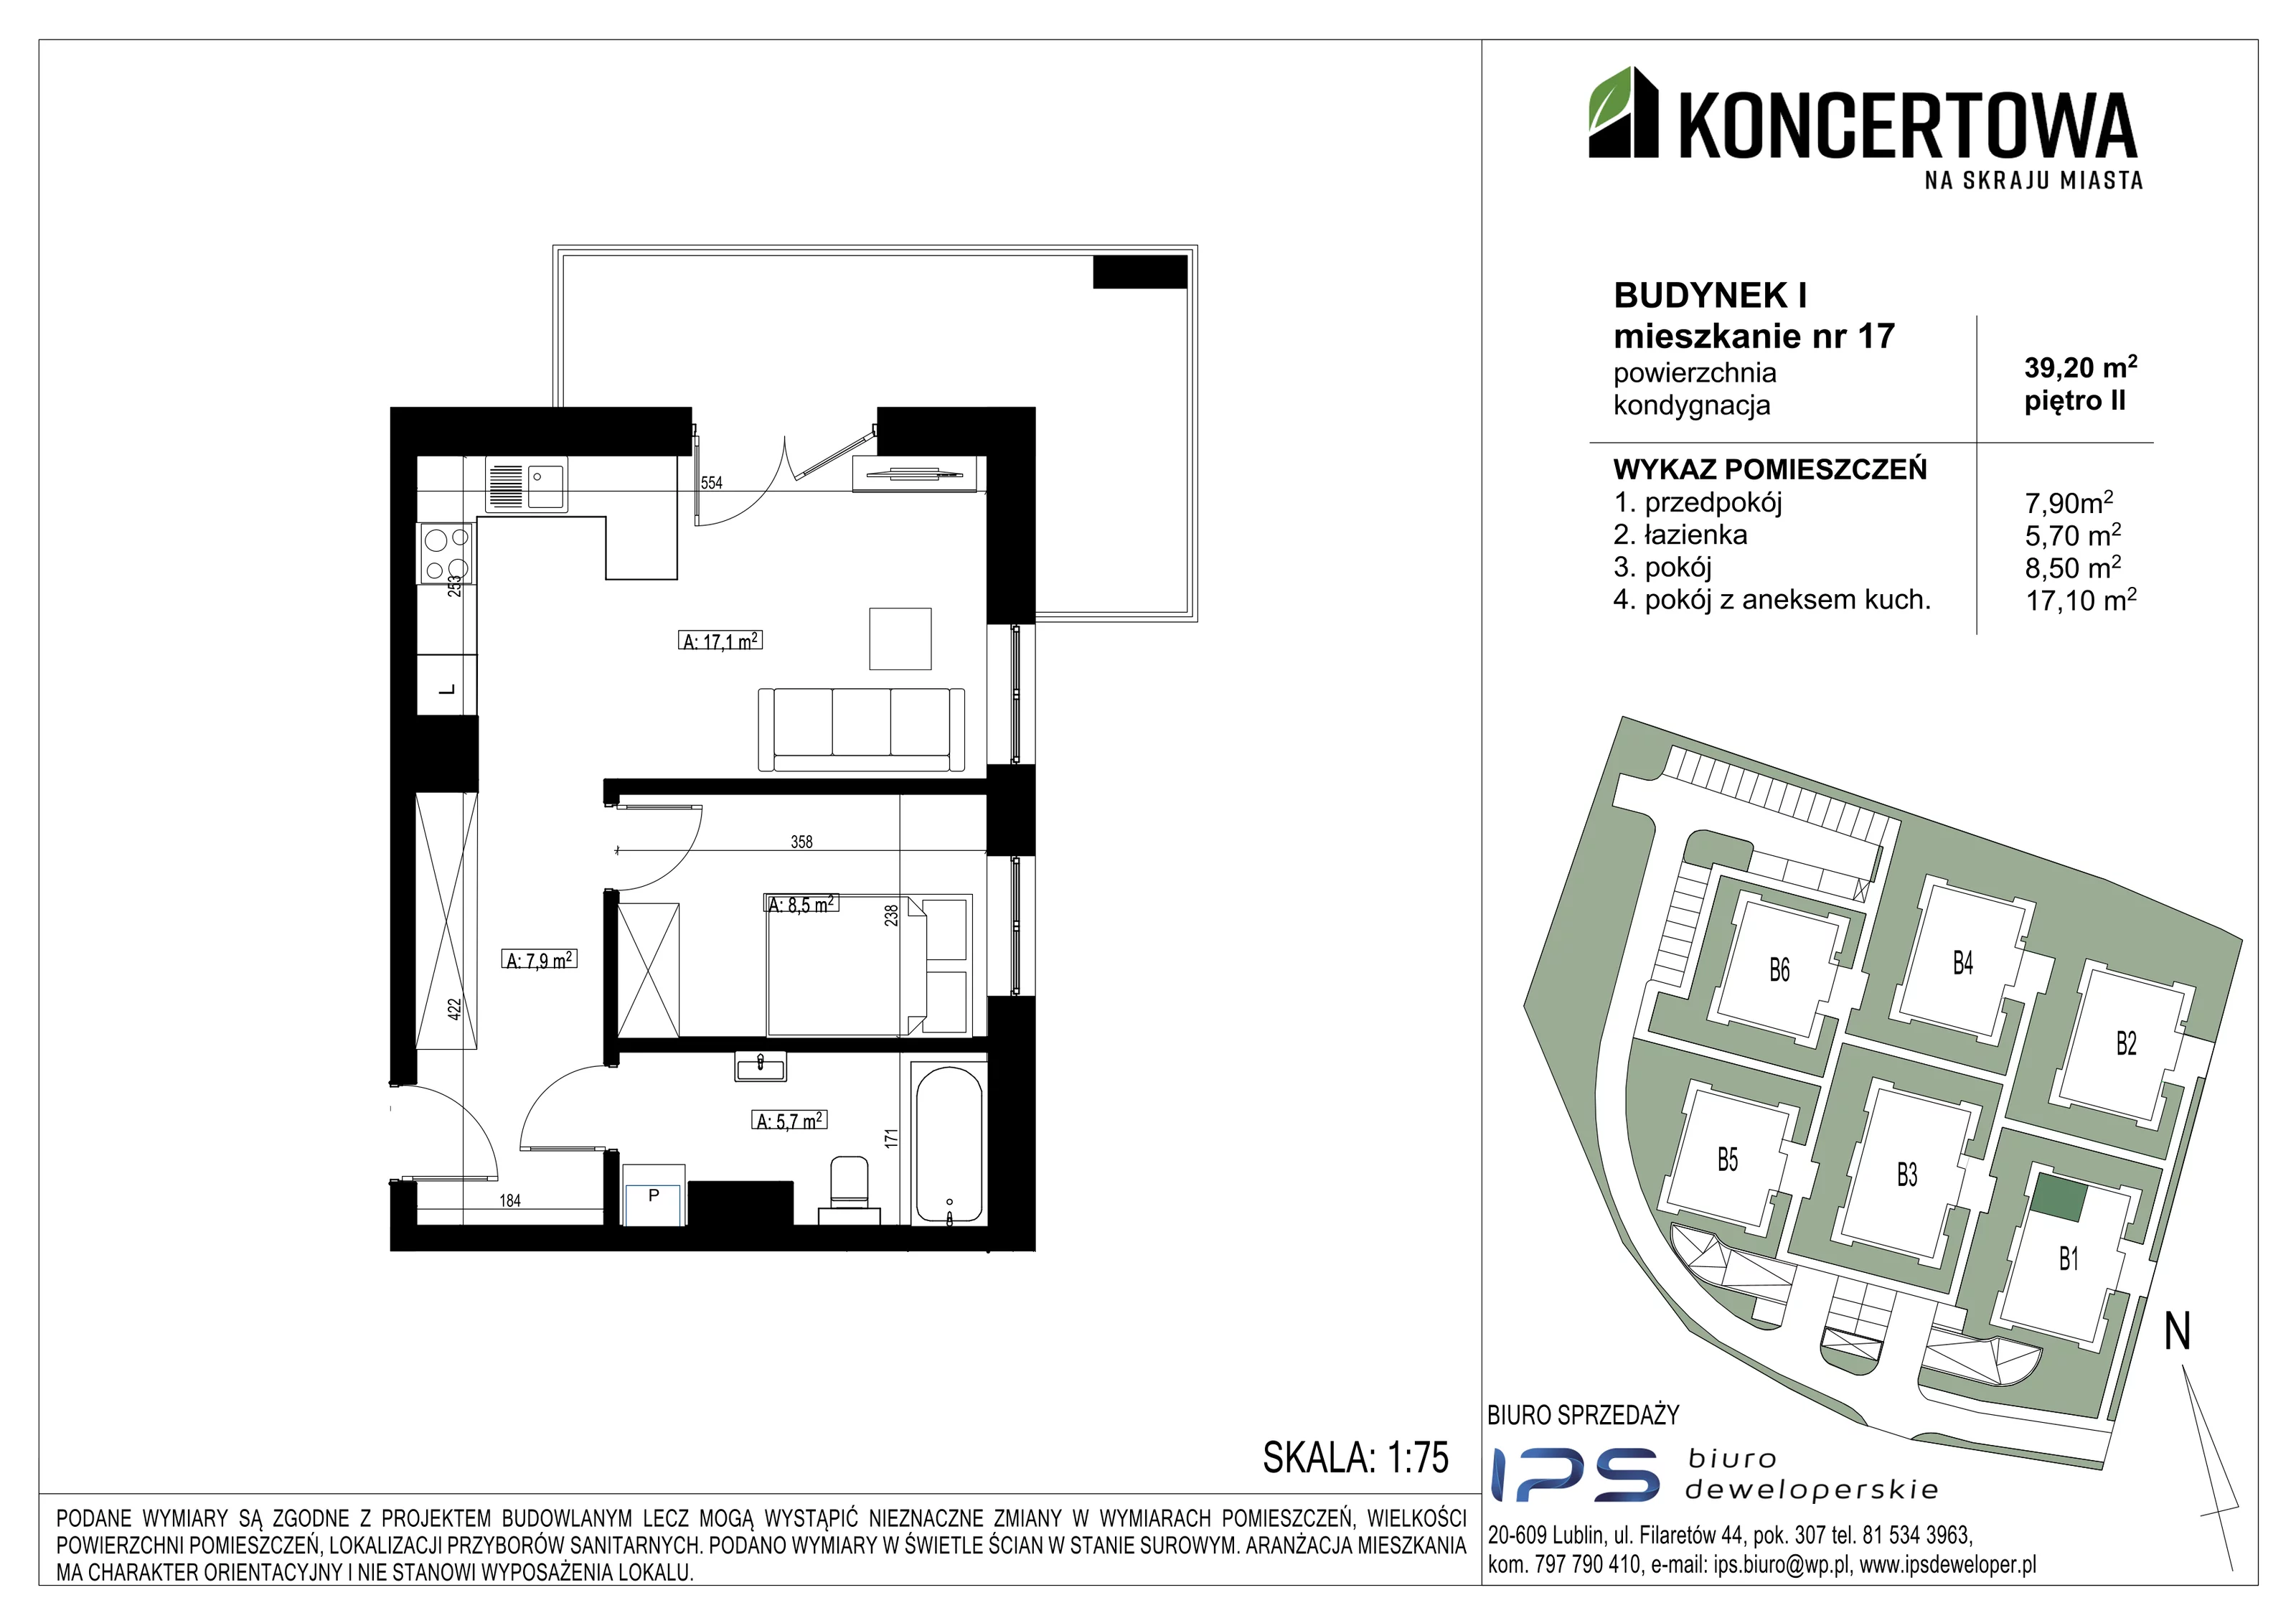 Mieszkanie 39,20 m², piętro 2, oferta nr 2_I/17, KONCERTOWA - Na skraju miasta, Lublin, Czechów Północny, Czechów Północny,  ul. Koncertowa